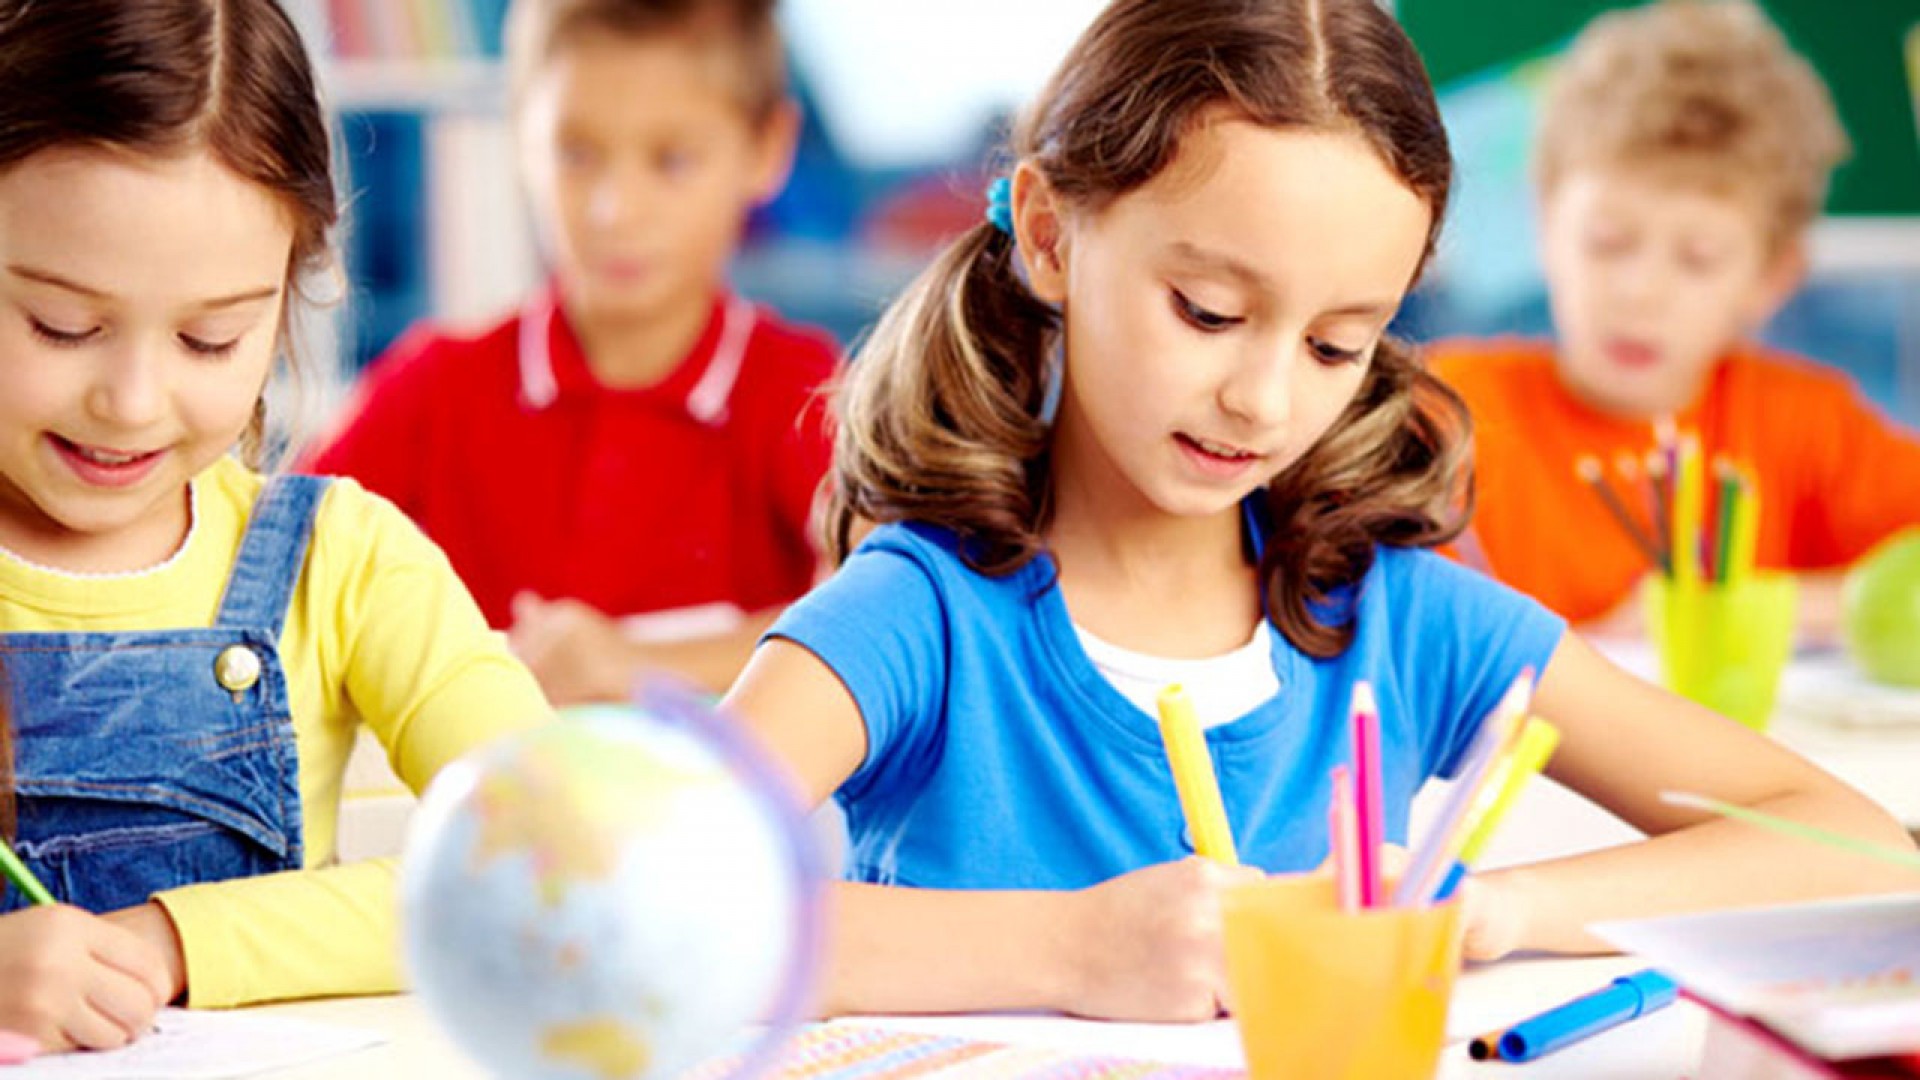  “Tìm hiểu ngay” ILI - trung tâm tiếng Anh cho trẻ em tại quận 10